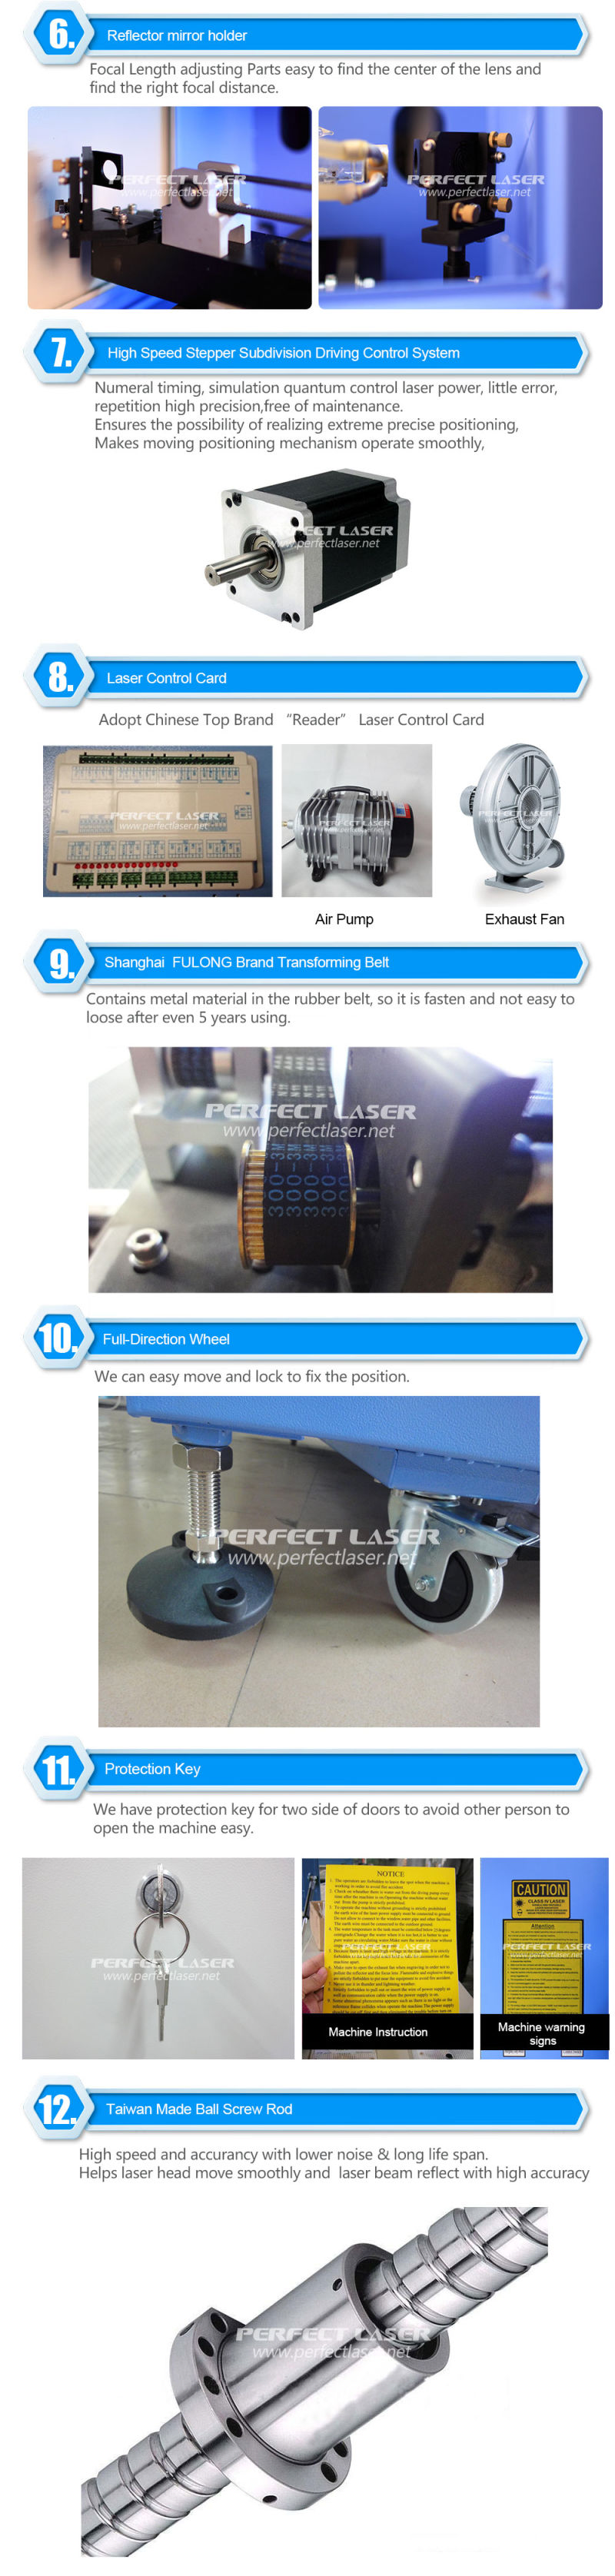 Perfect Laser CO2 Wood Laser Cutting Engraving Machine Price